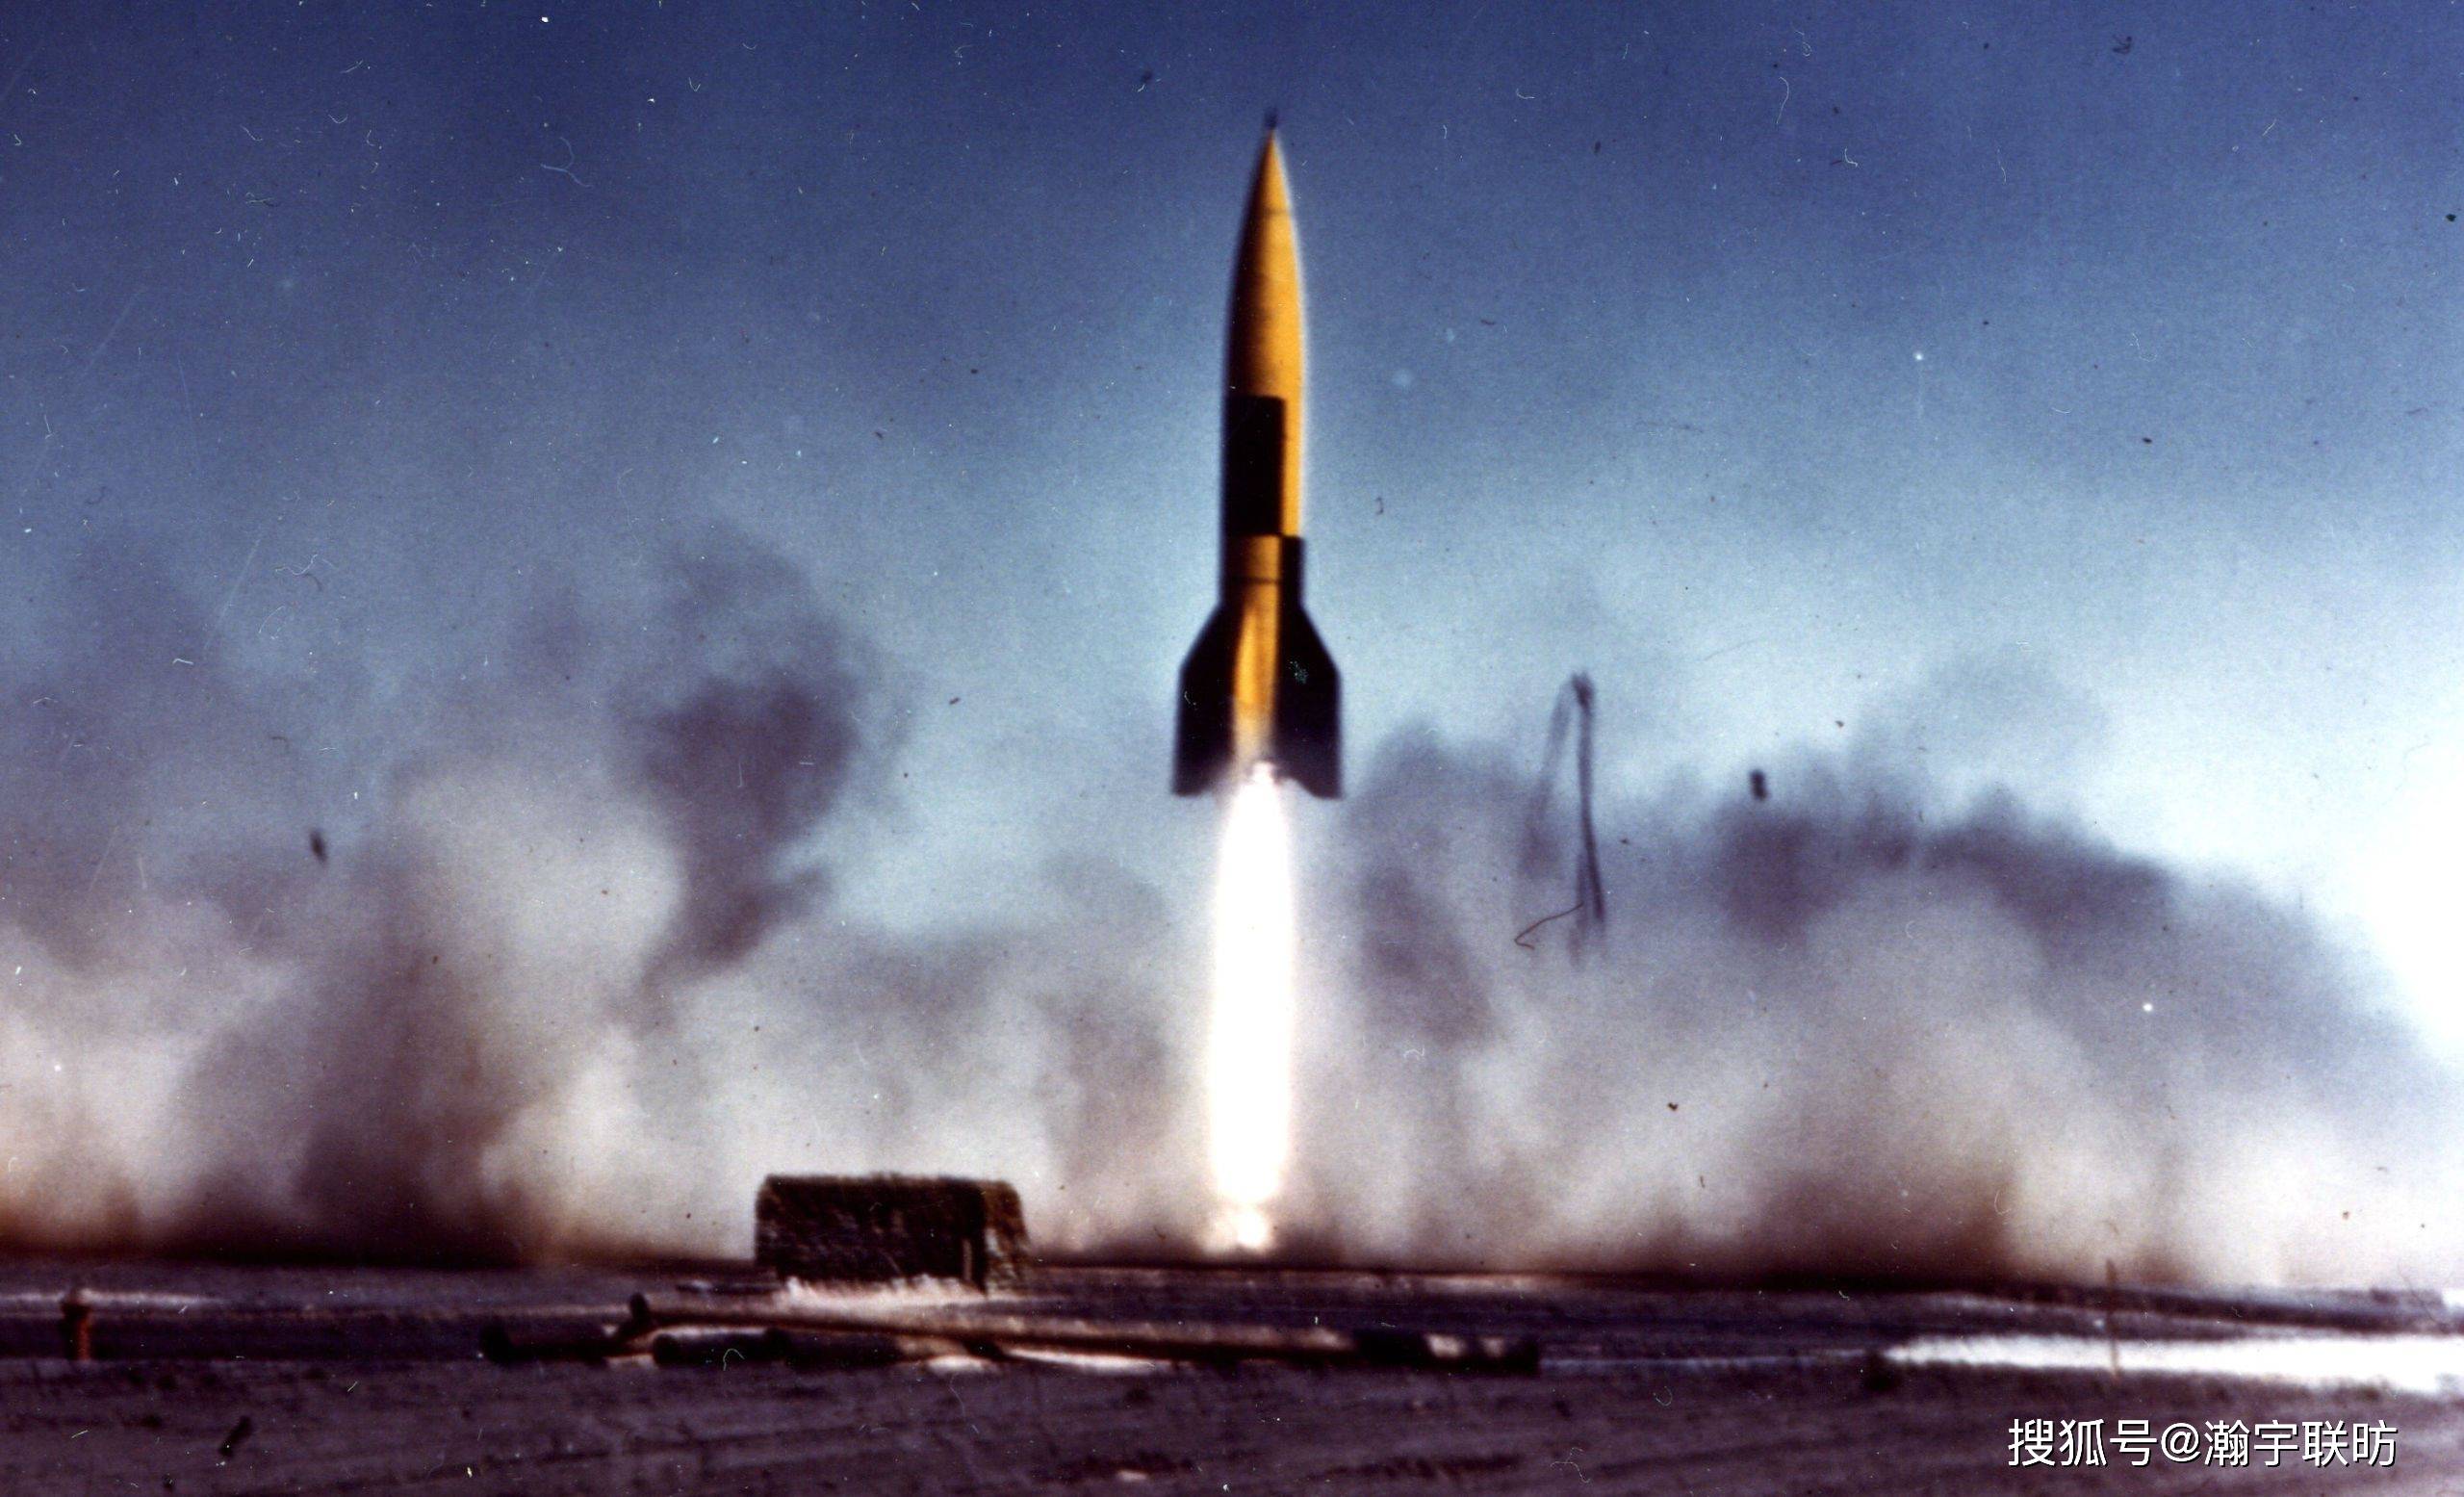 从1946年到1952年,美国共试射了63次v-2导弹,在这些测试中获得的数据